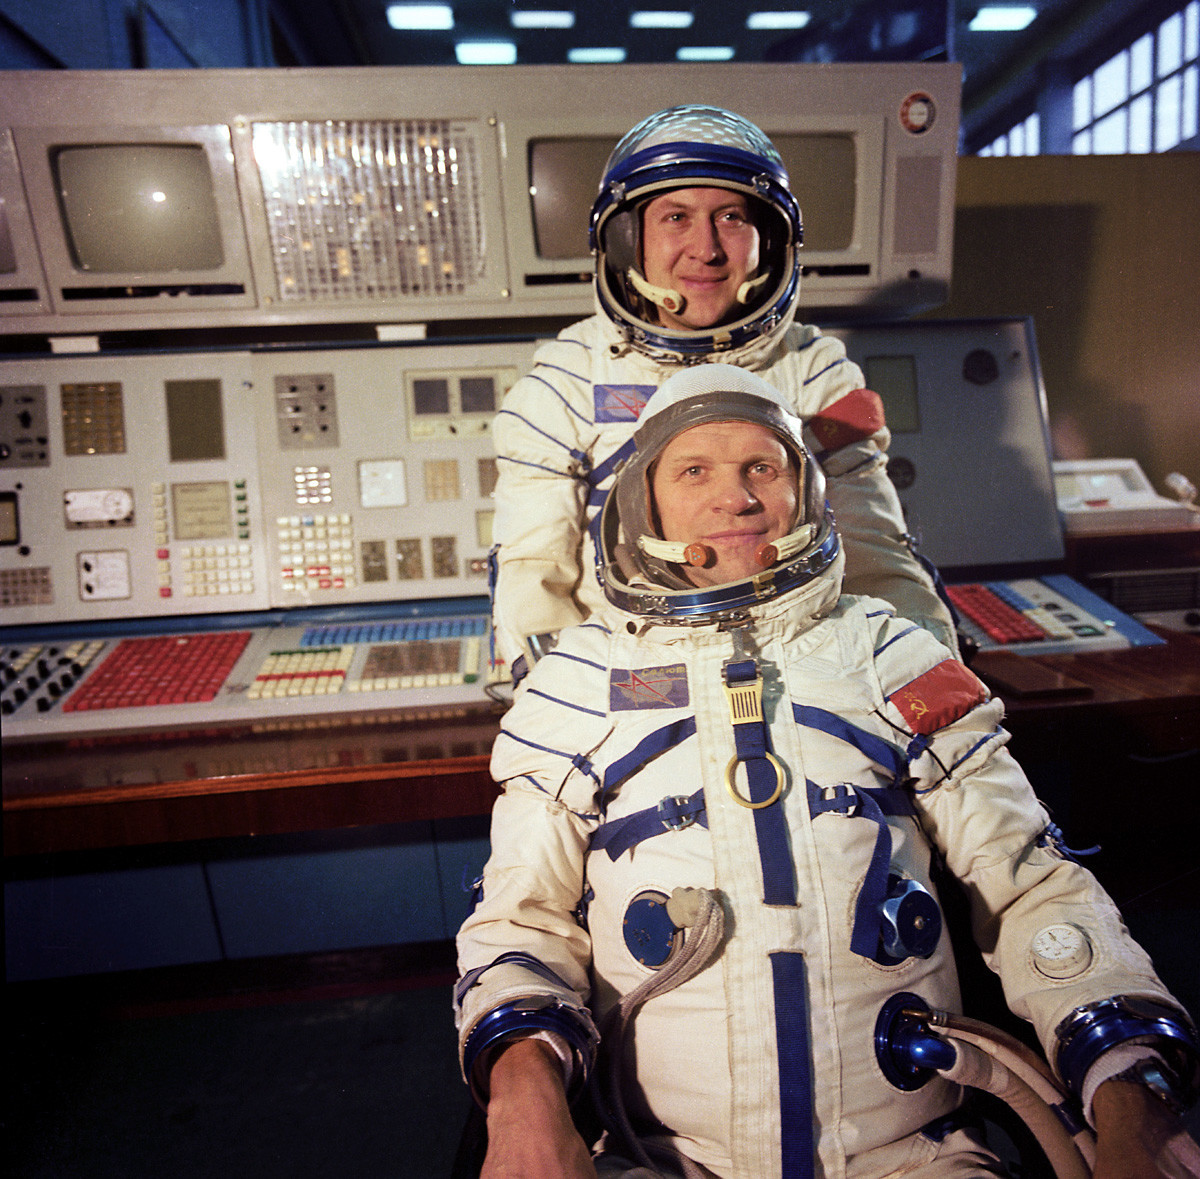 Tripulantes da missão espacial internacional Soyuz 28: Vladimír Remek (Tchecoslováquia) e cosmonauta soviético Aleksêi Gubarev